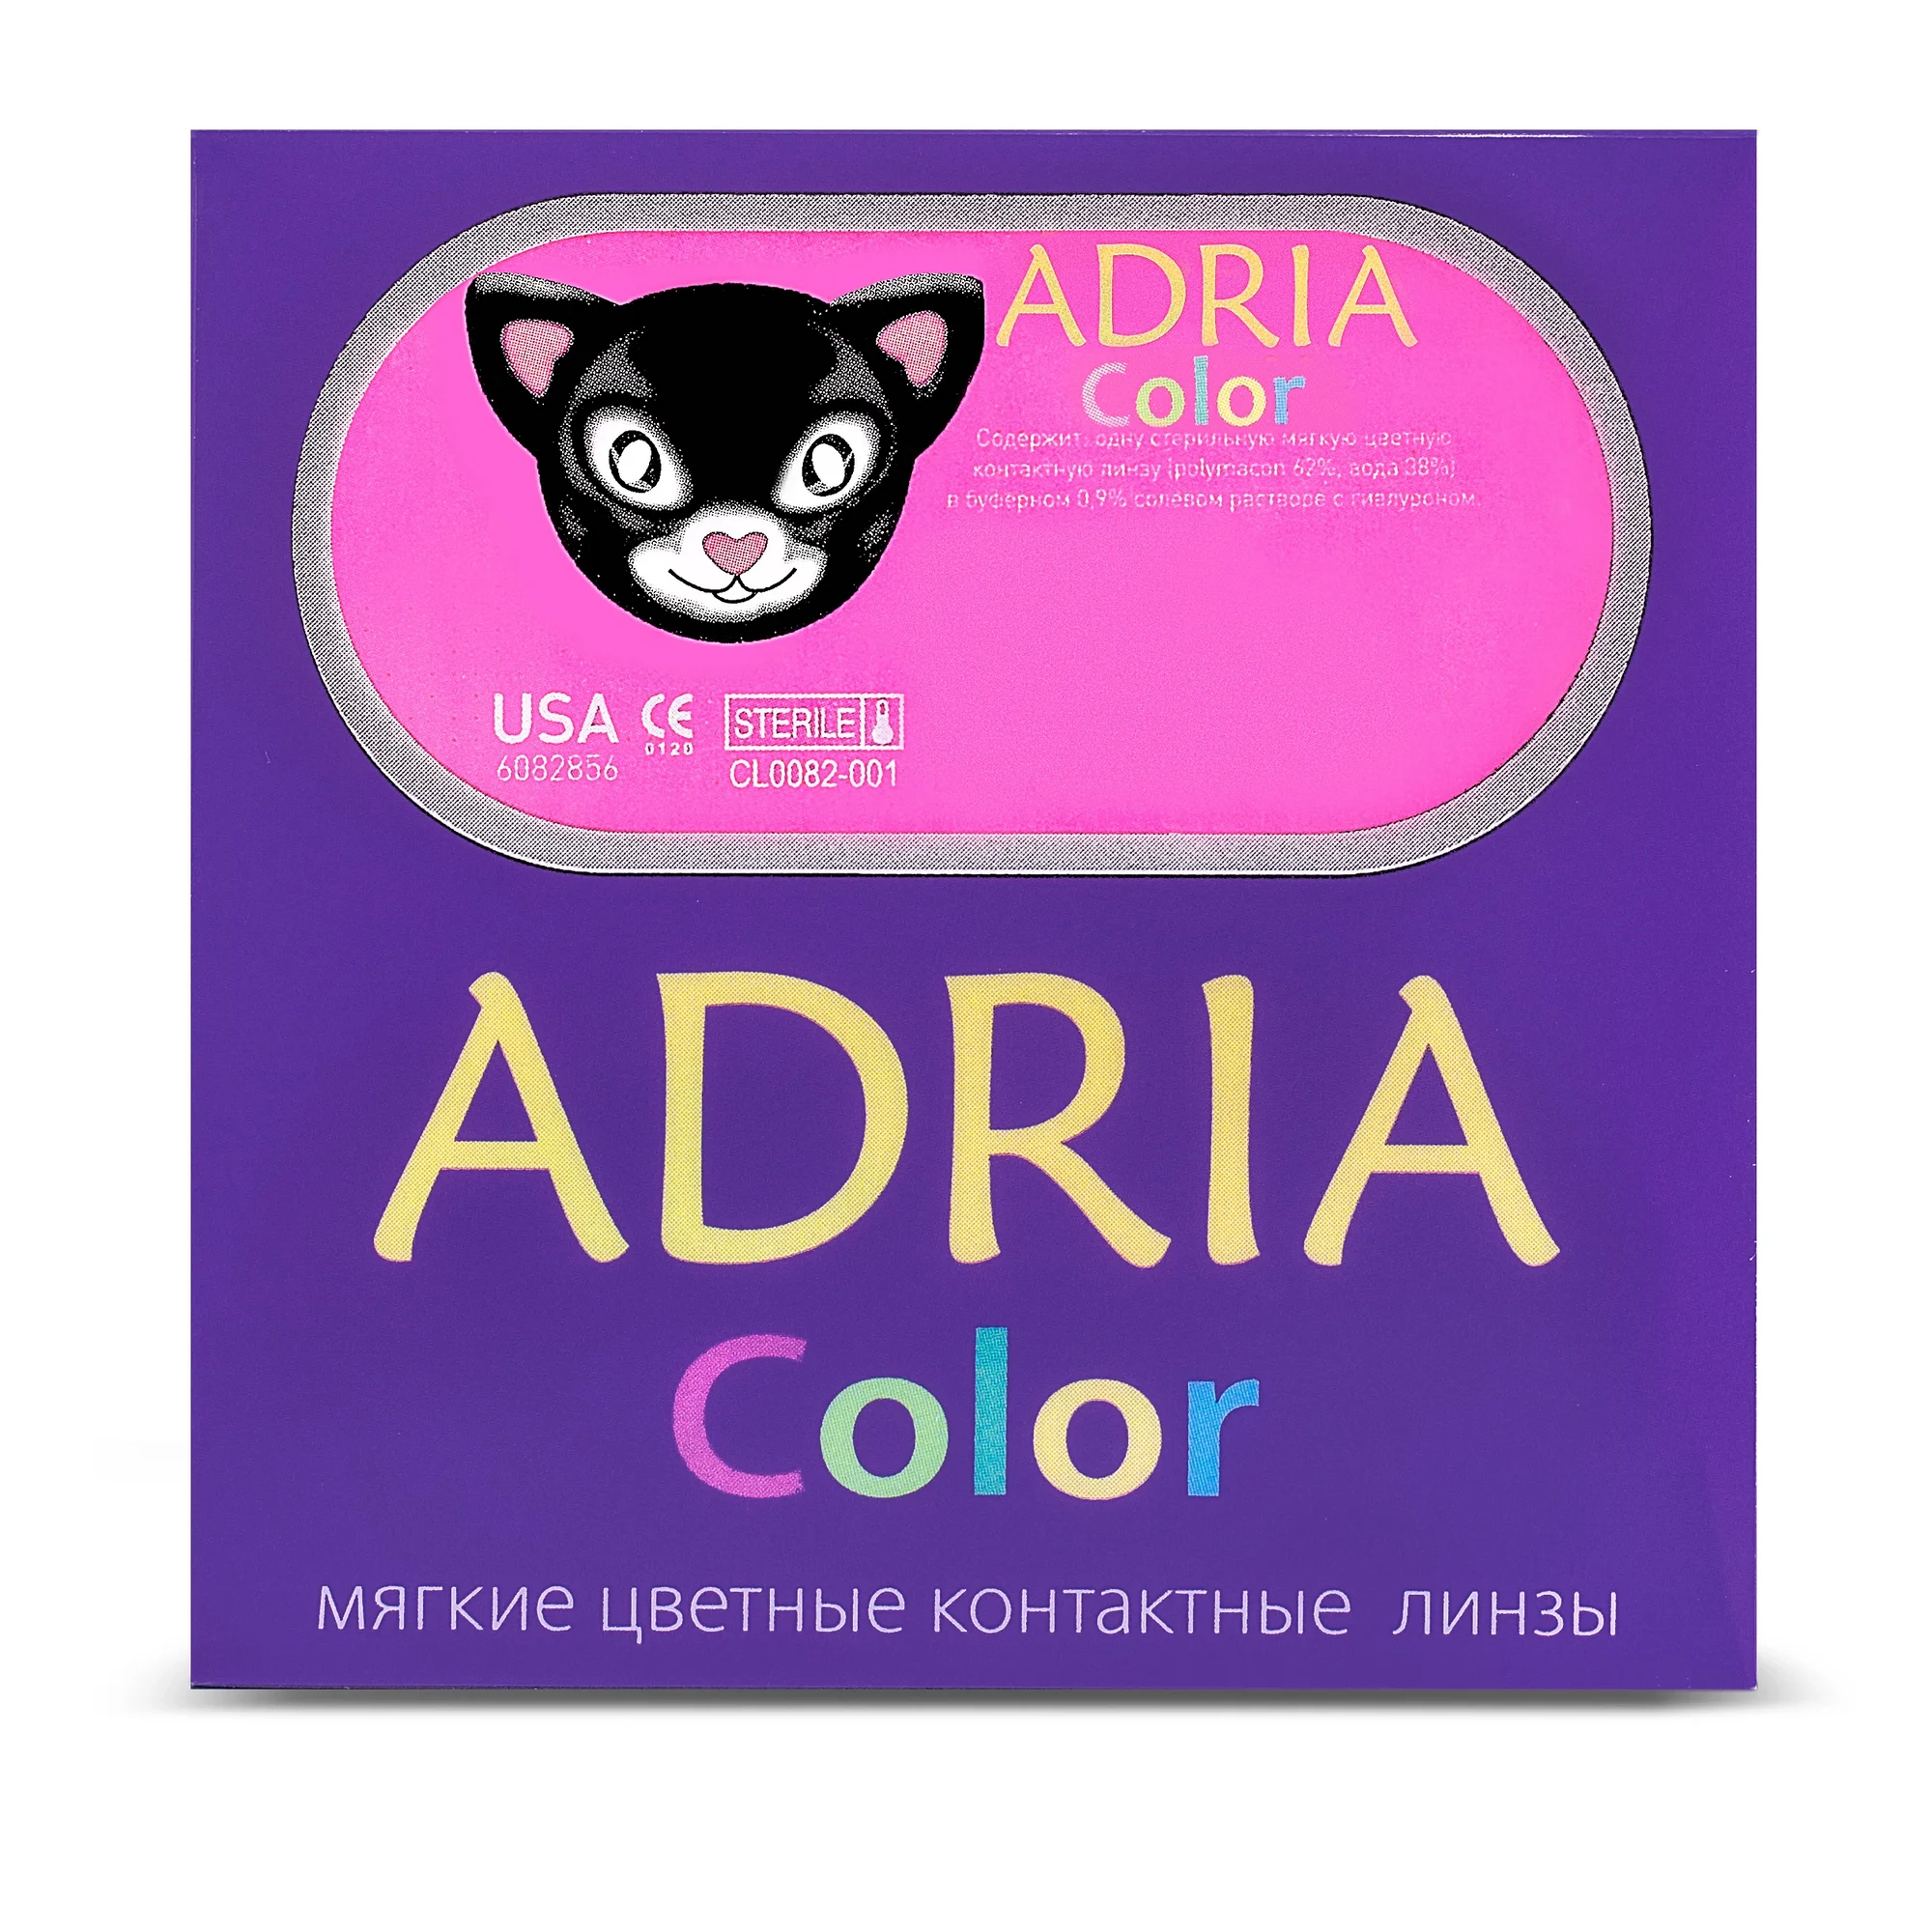 COLOR BOX ADRIA Color 3 Tone Brown (карий)